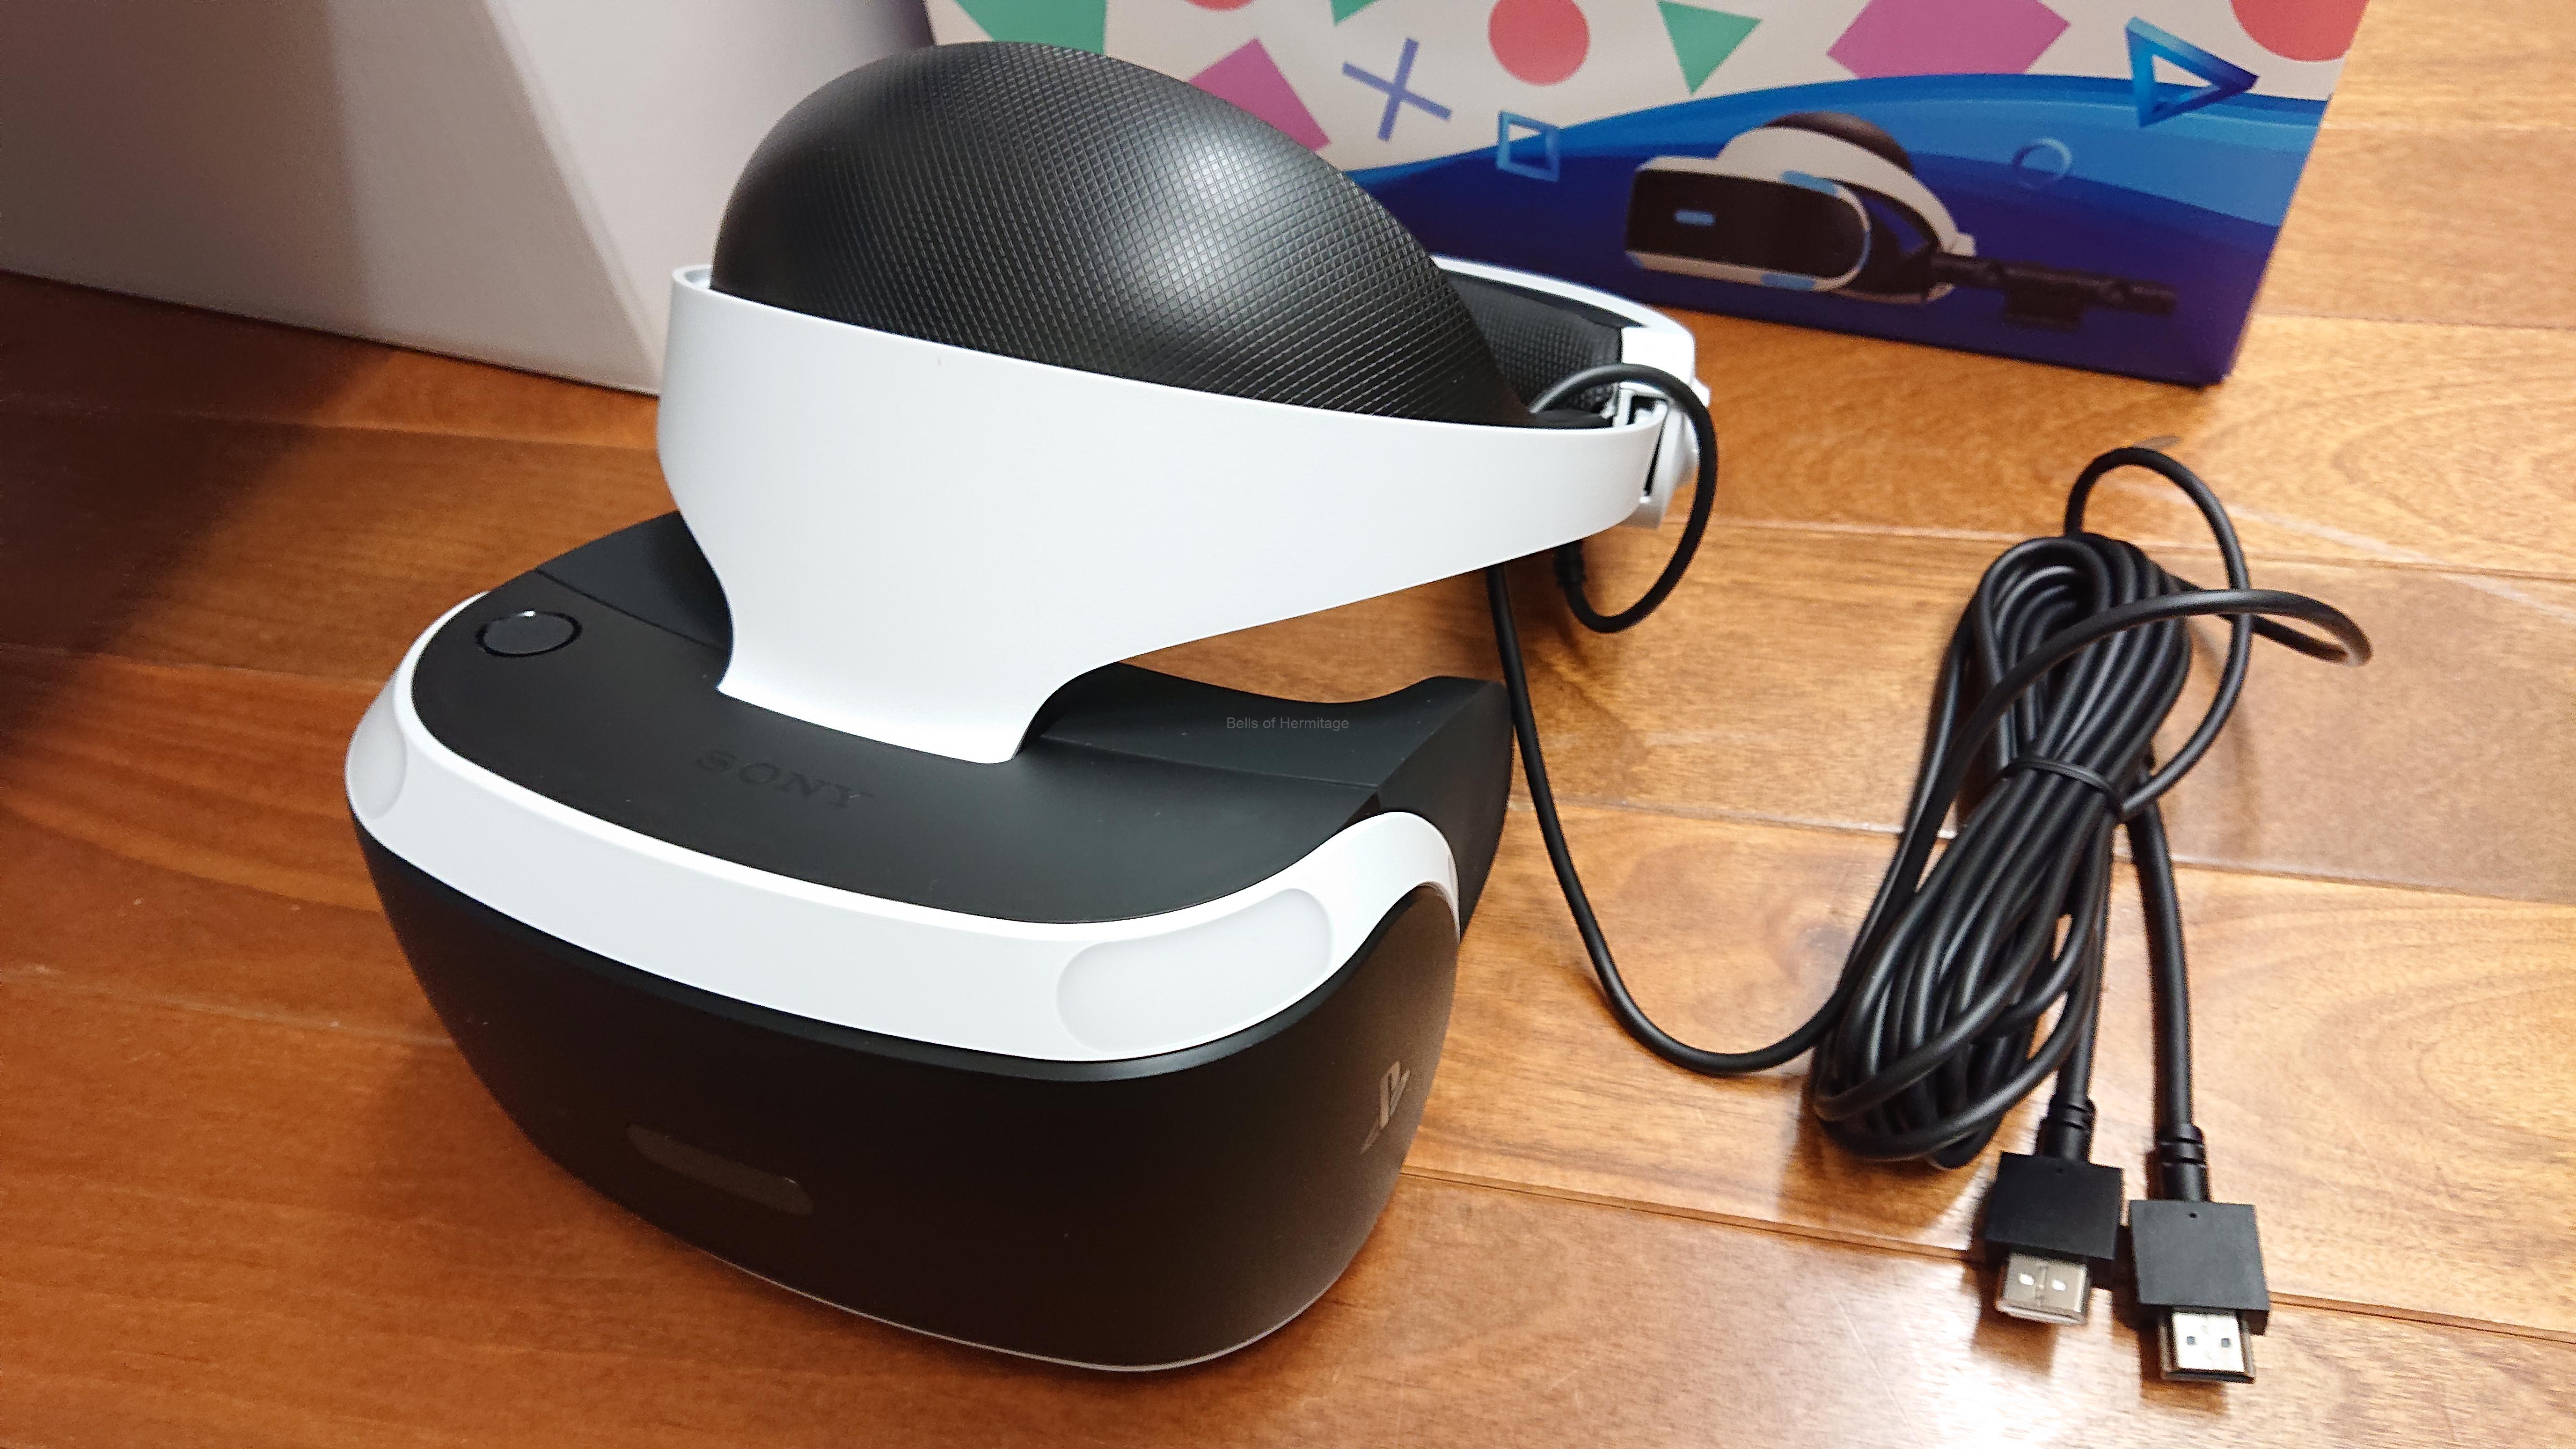 【公式オンラインストア PlayStation VR とソフト3本付き CUHJ-16007 家庭用ゲーム本体